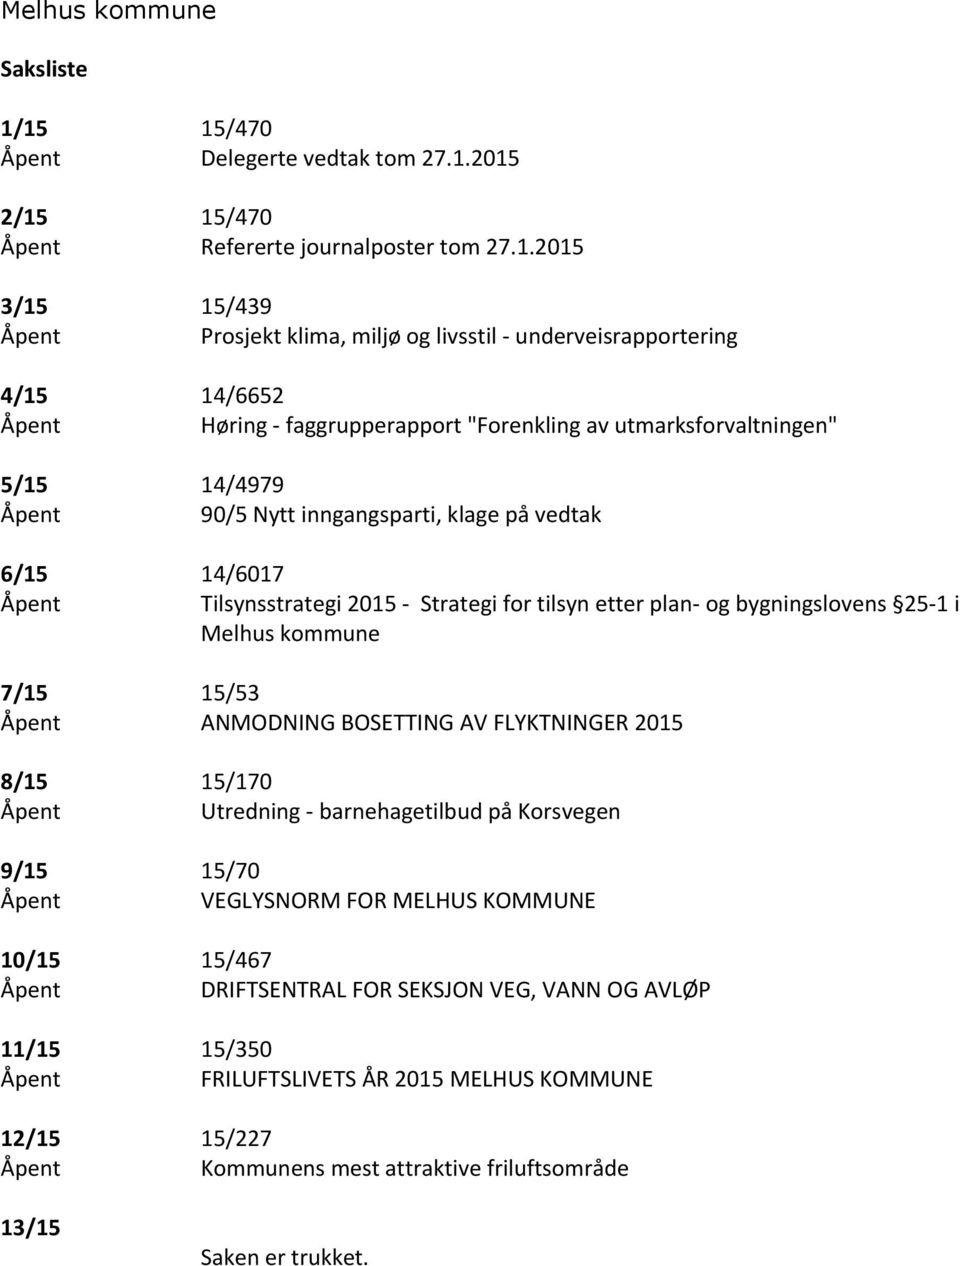 Høring - faggrupperapport "Forenkling av utmarksforvaltningen" 5/15 14/4979 Åpent 90/5 Nytt inngangsparti, klage på vedtak 6/15 14/6017 Åpent Tilsynsstrategi 2015 - Strategi for tilsyn etter plan- og